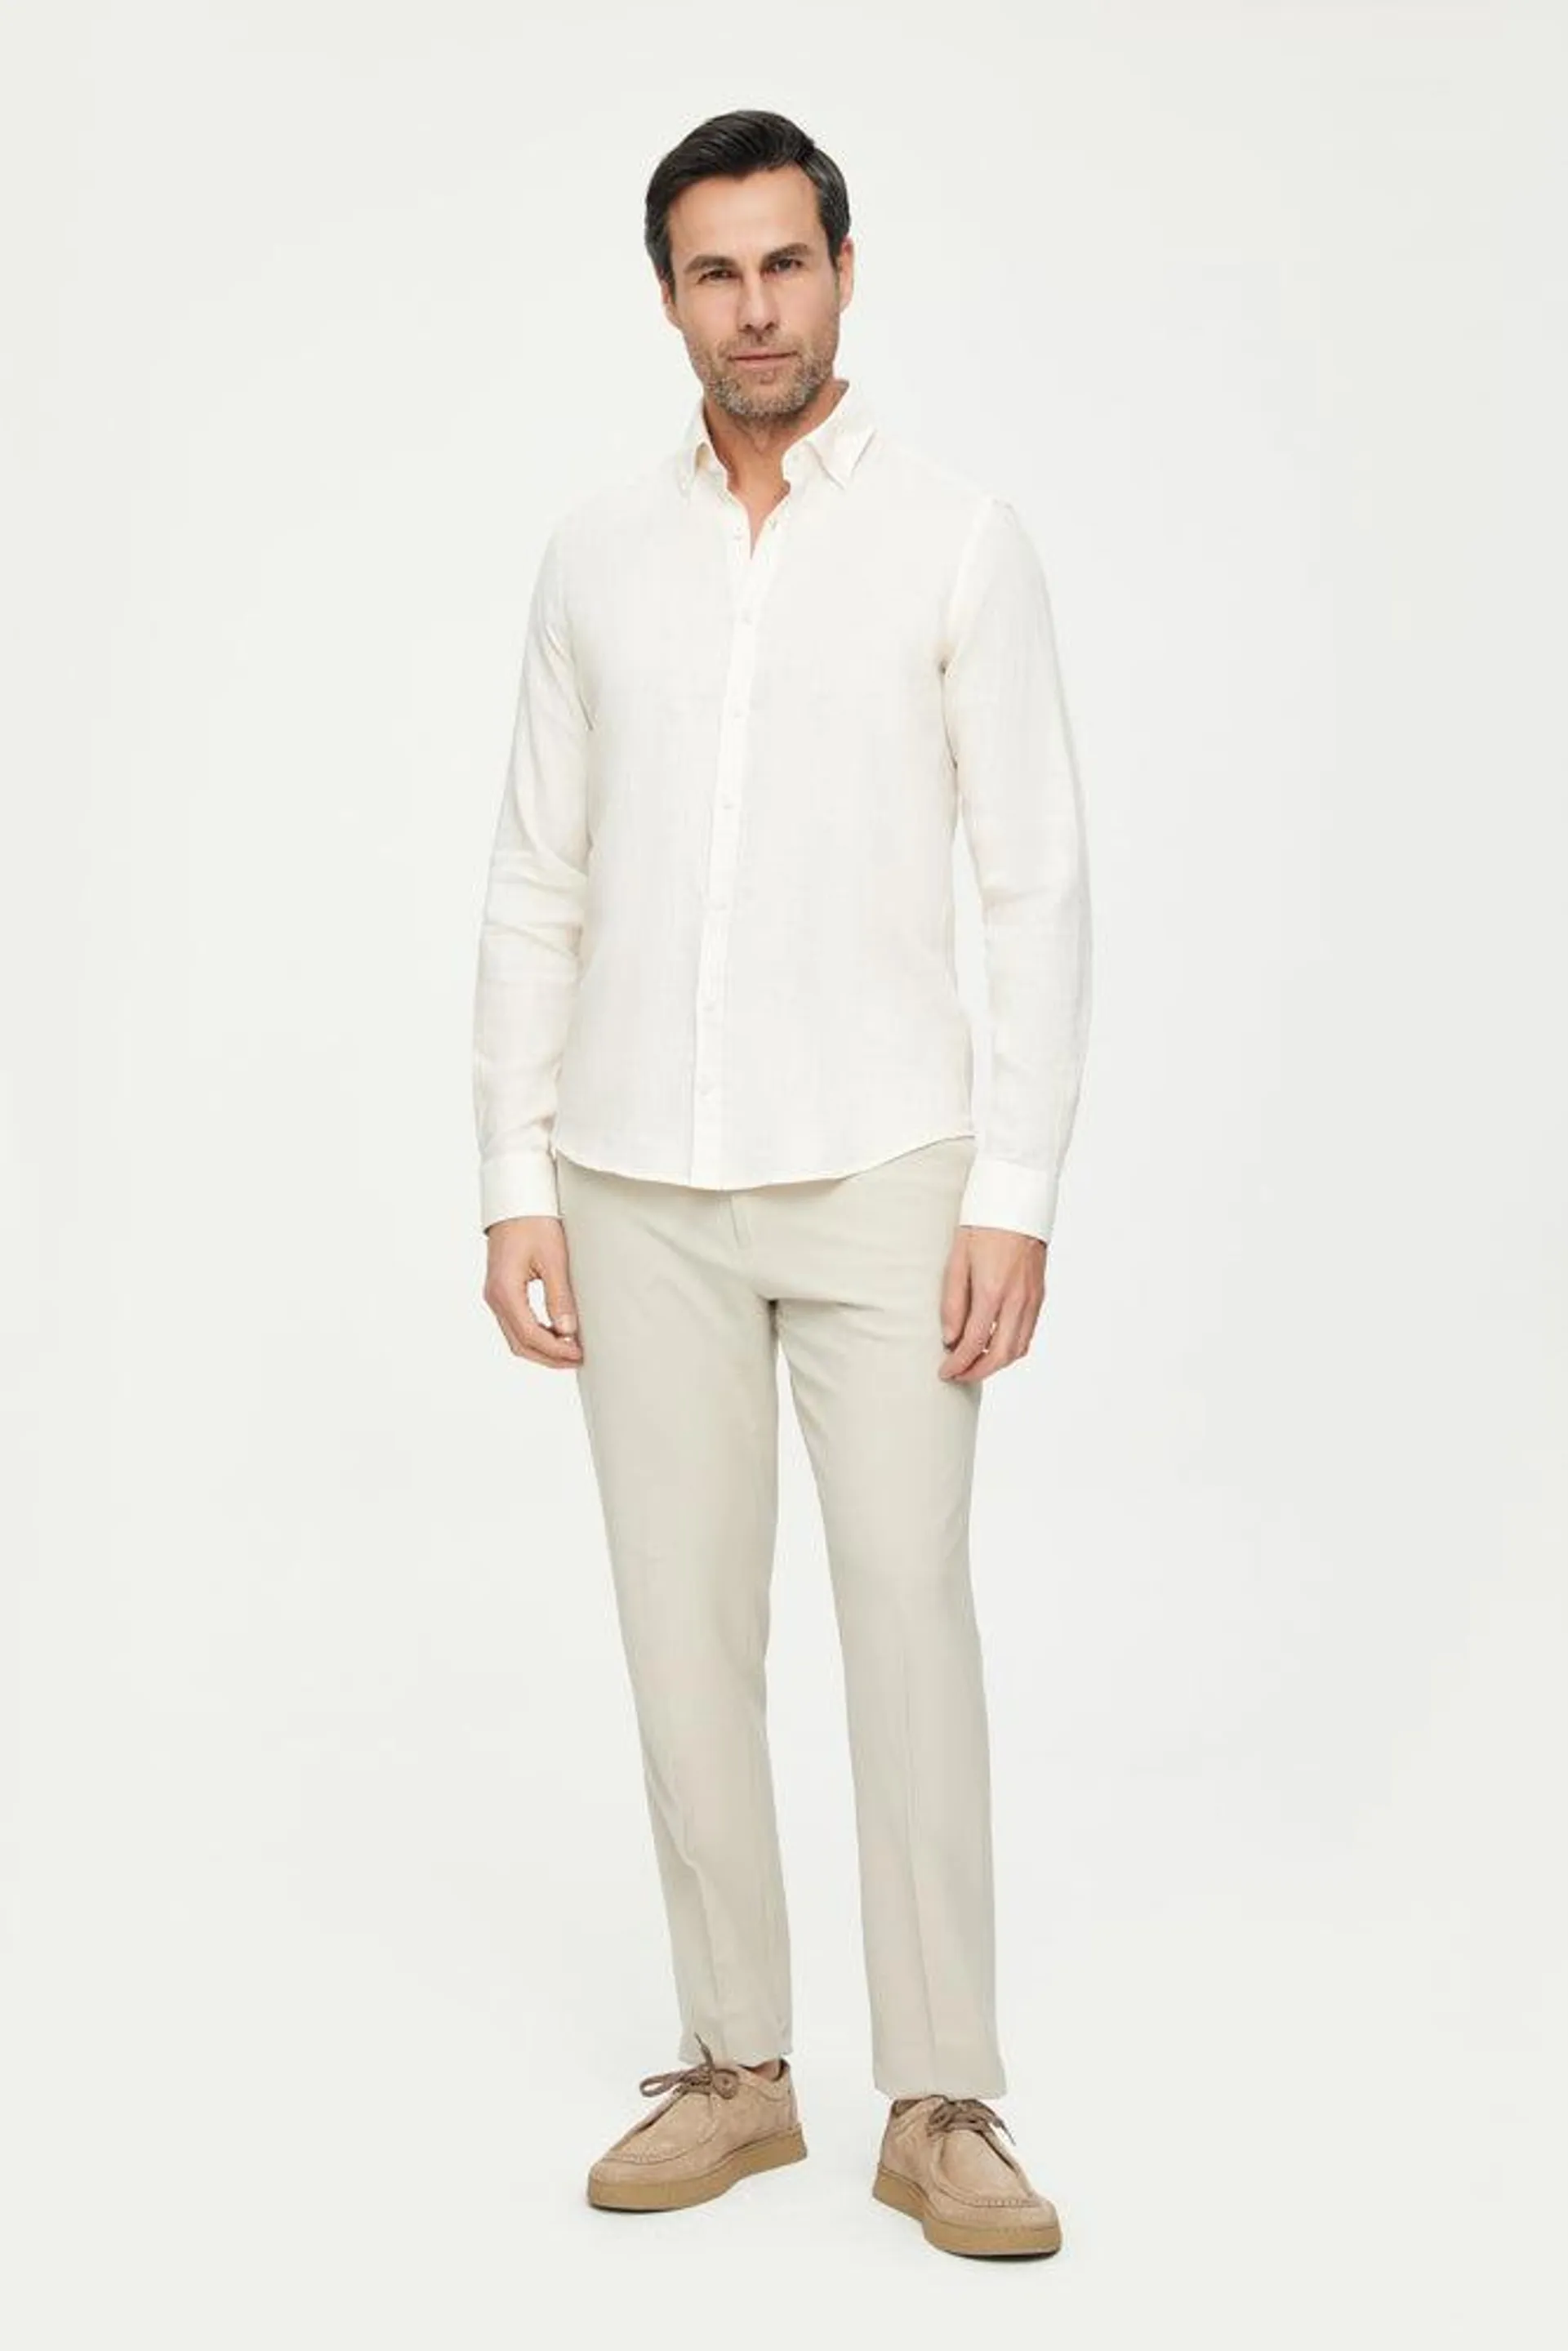 Button down Collar Linen Man Shirt Beige Plain